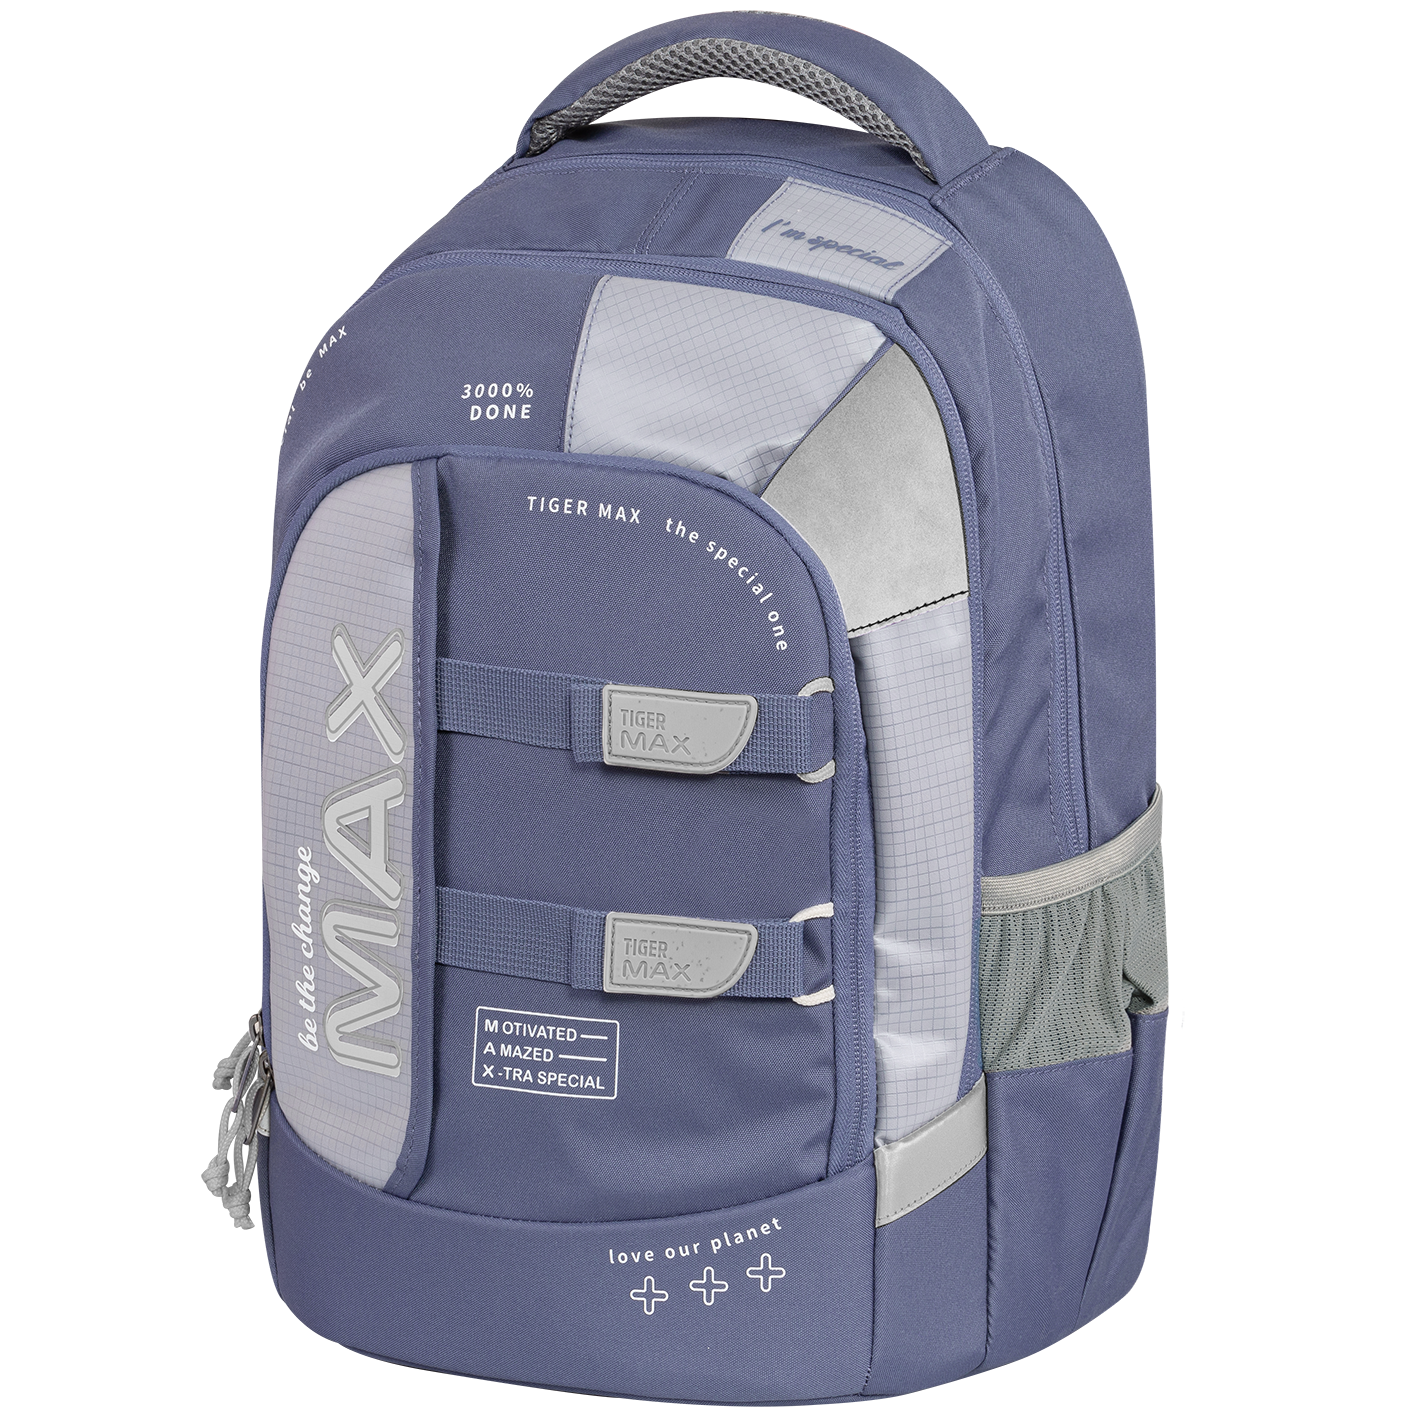 Hình ảnh Ba Lô Chống Gù Max Backpack Pro 2 - Cloudy - Special Edition - Tiger Max TMMX-041A